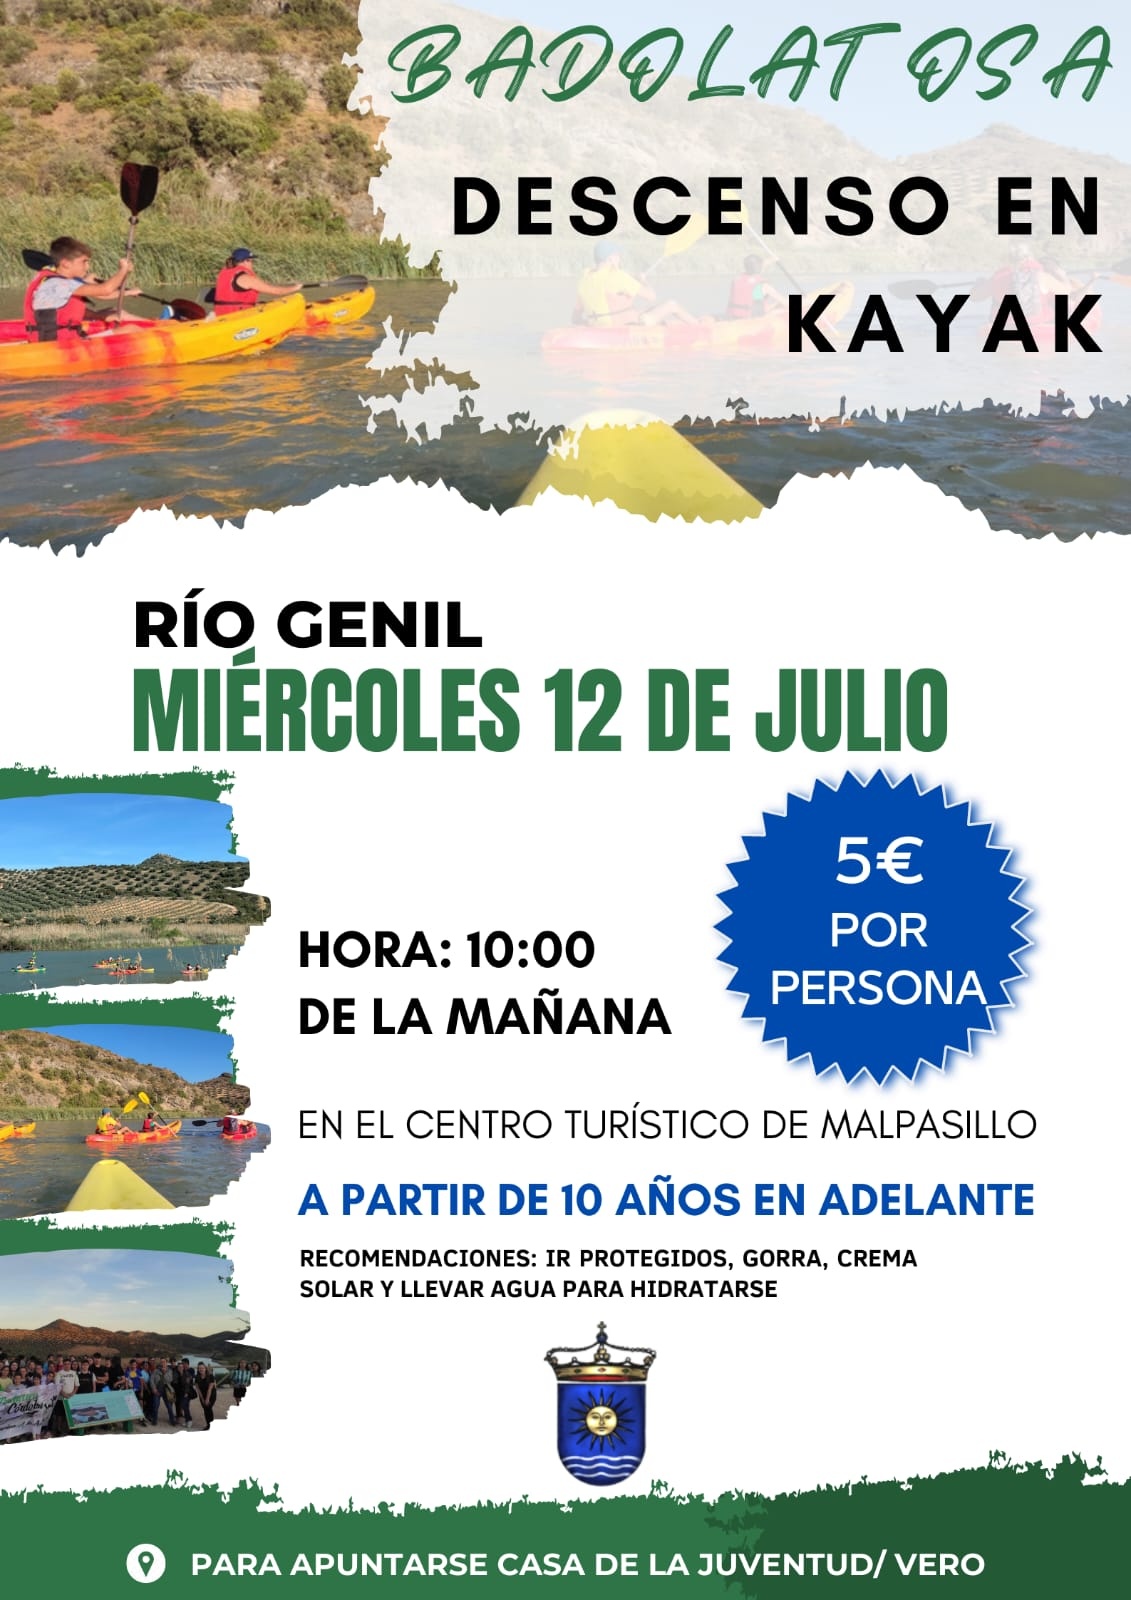 dencenso kayak 12 julio